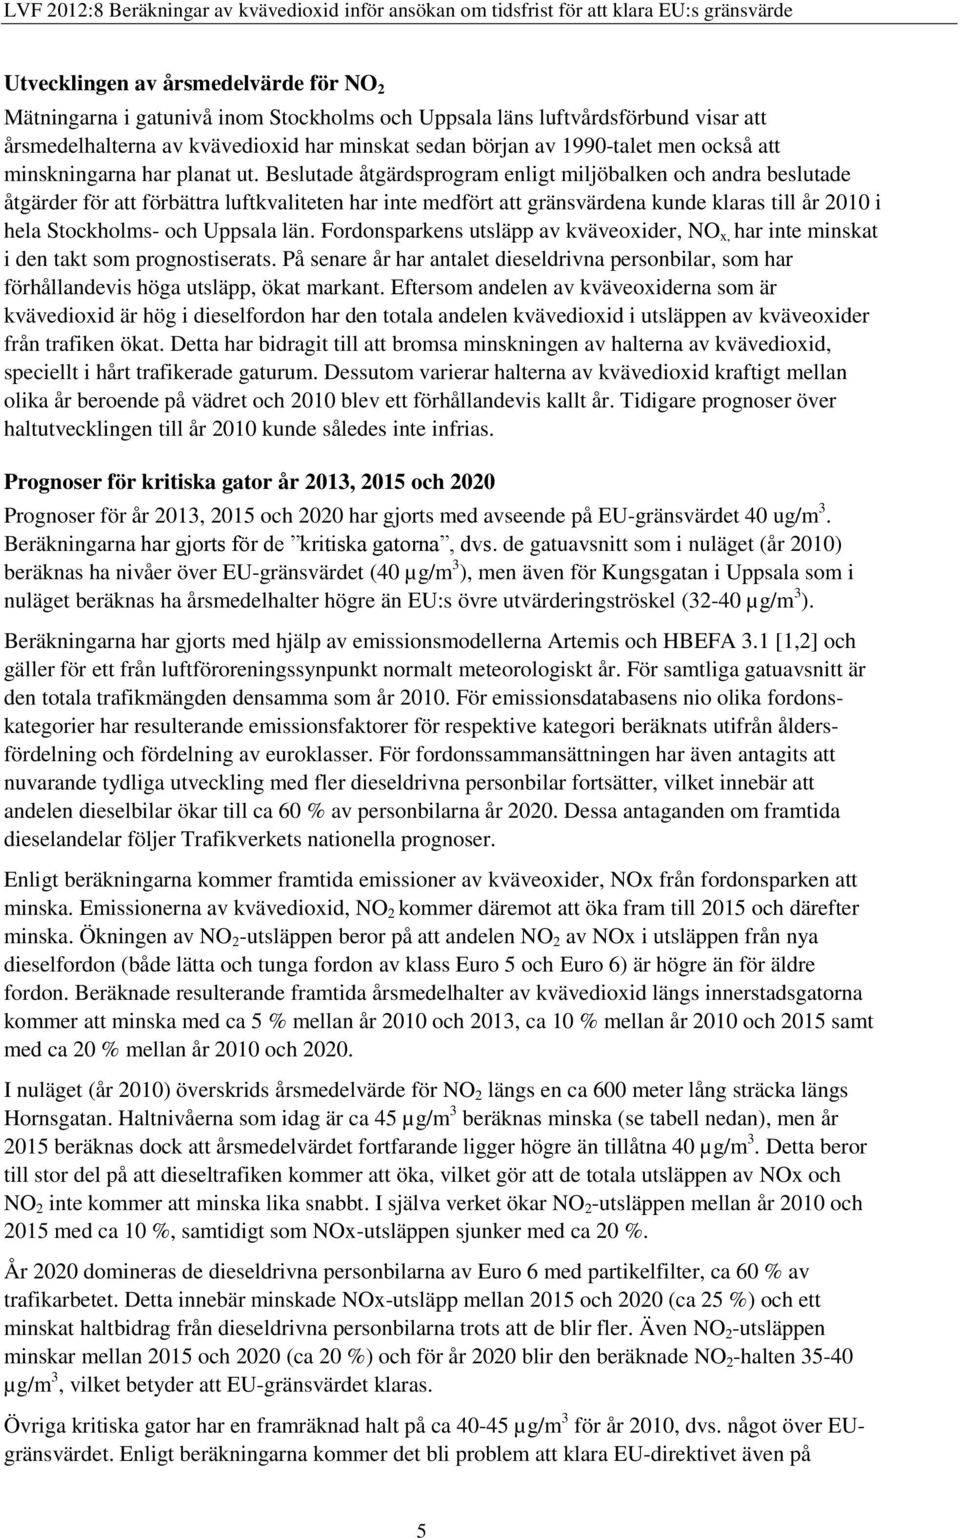 Beslutade åtgärdsprogram enligt miljöbalken och andra beslutade åtgärder för att förbättra luftkvaliteten har inte medfört att gränsvärdena kunde klaras till år 2010 i hela Stockholms- och Uppsala